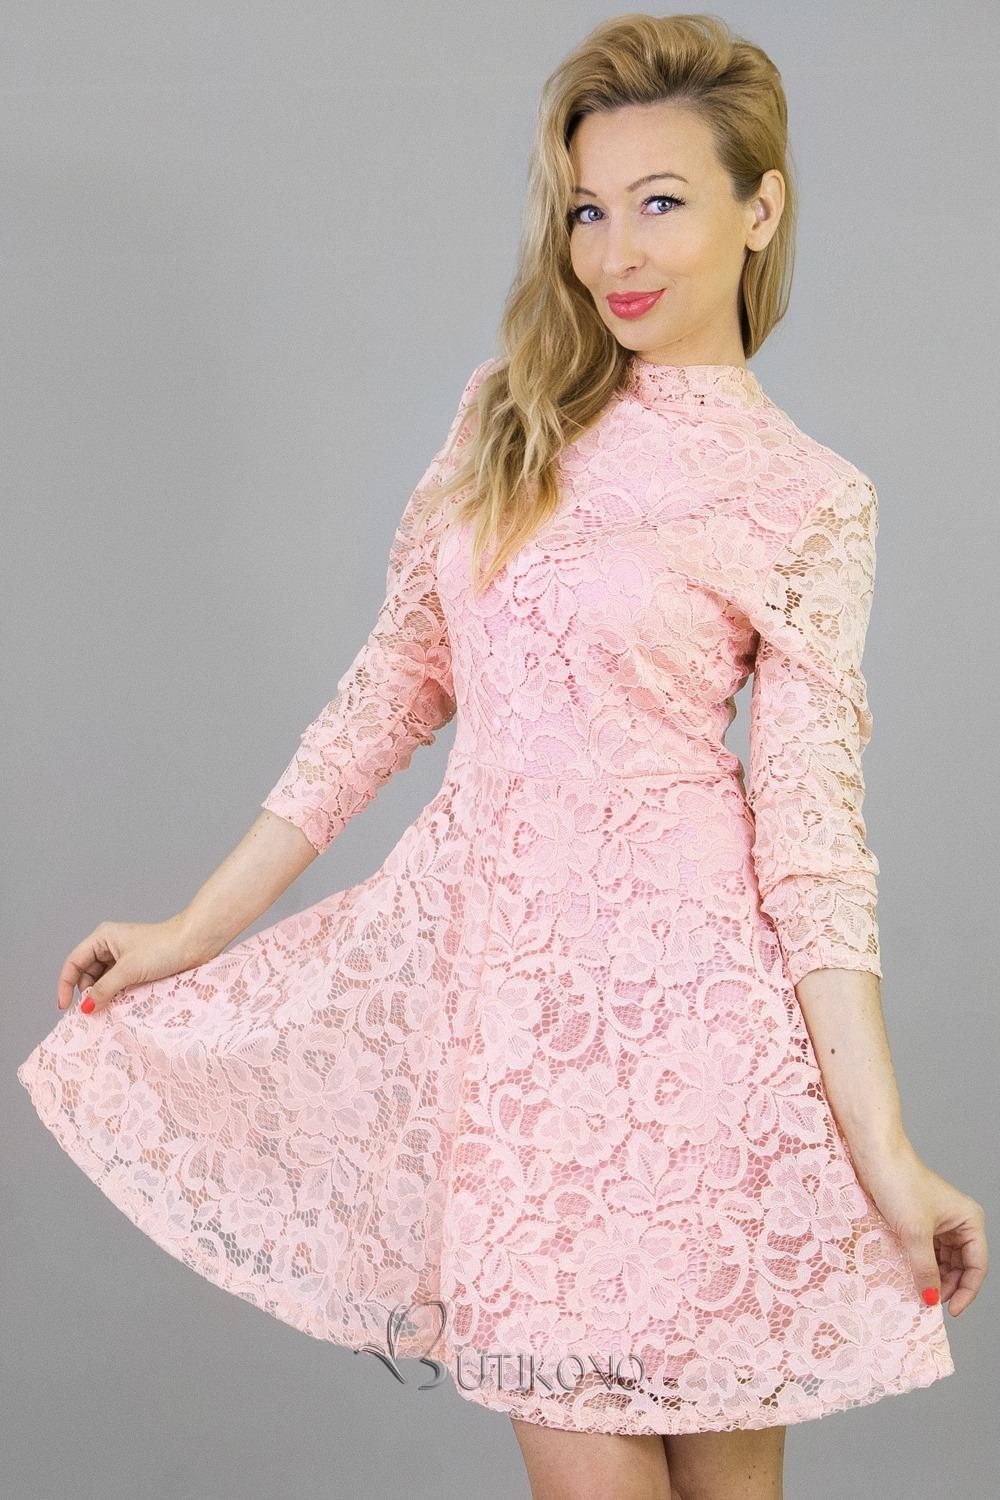 Ružové čipkované šaty